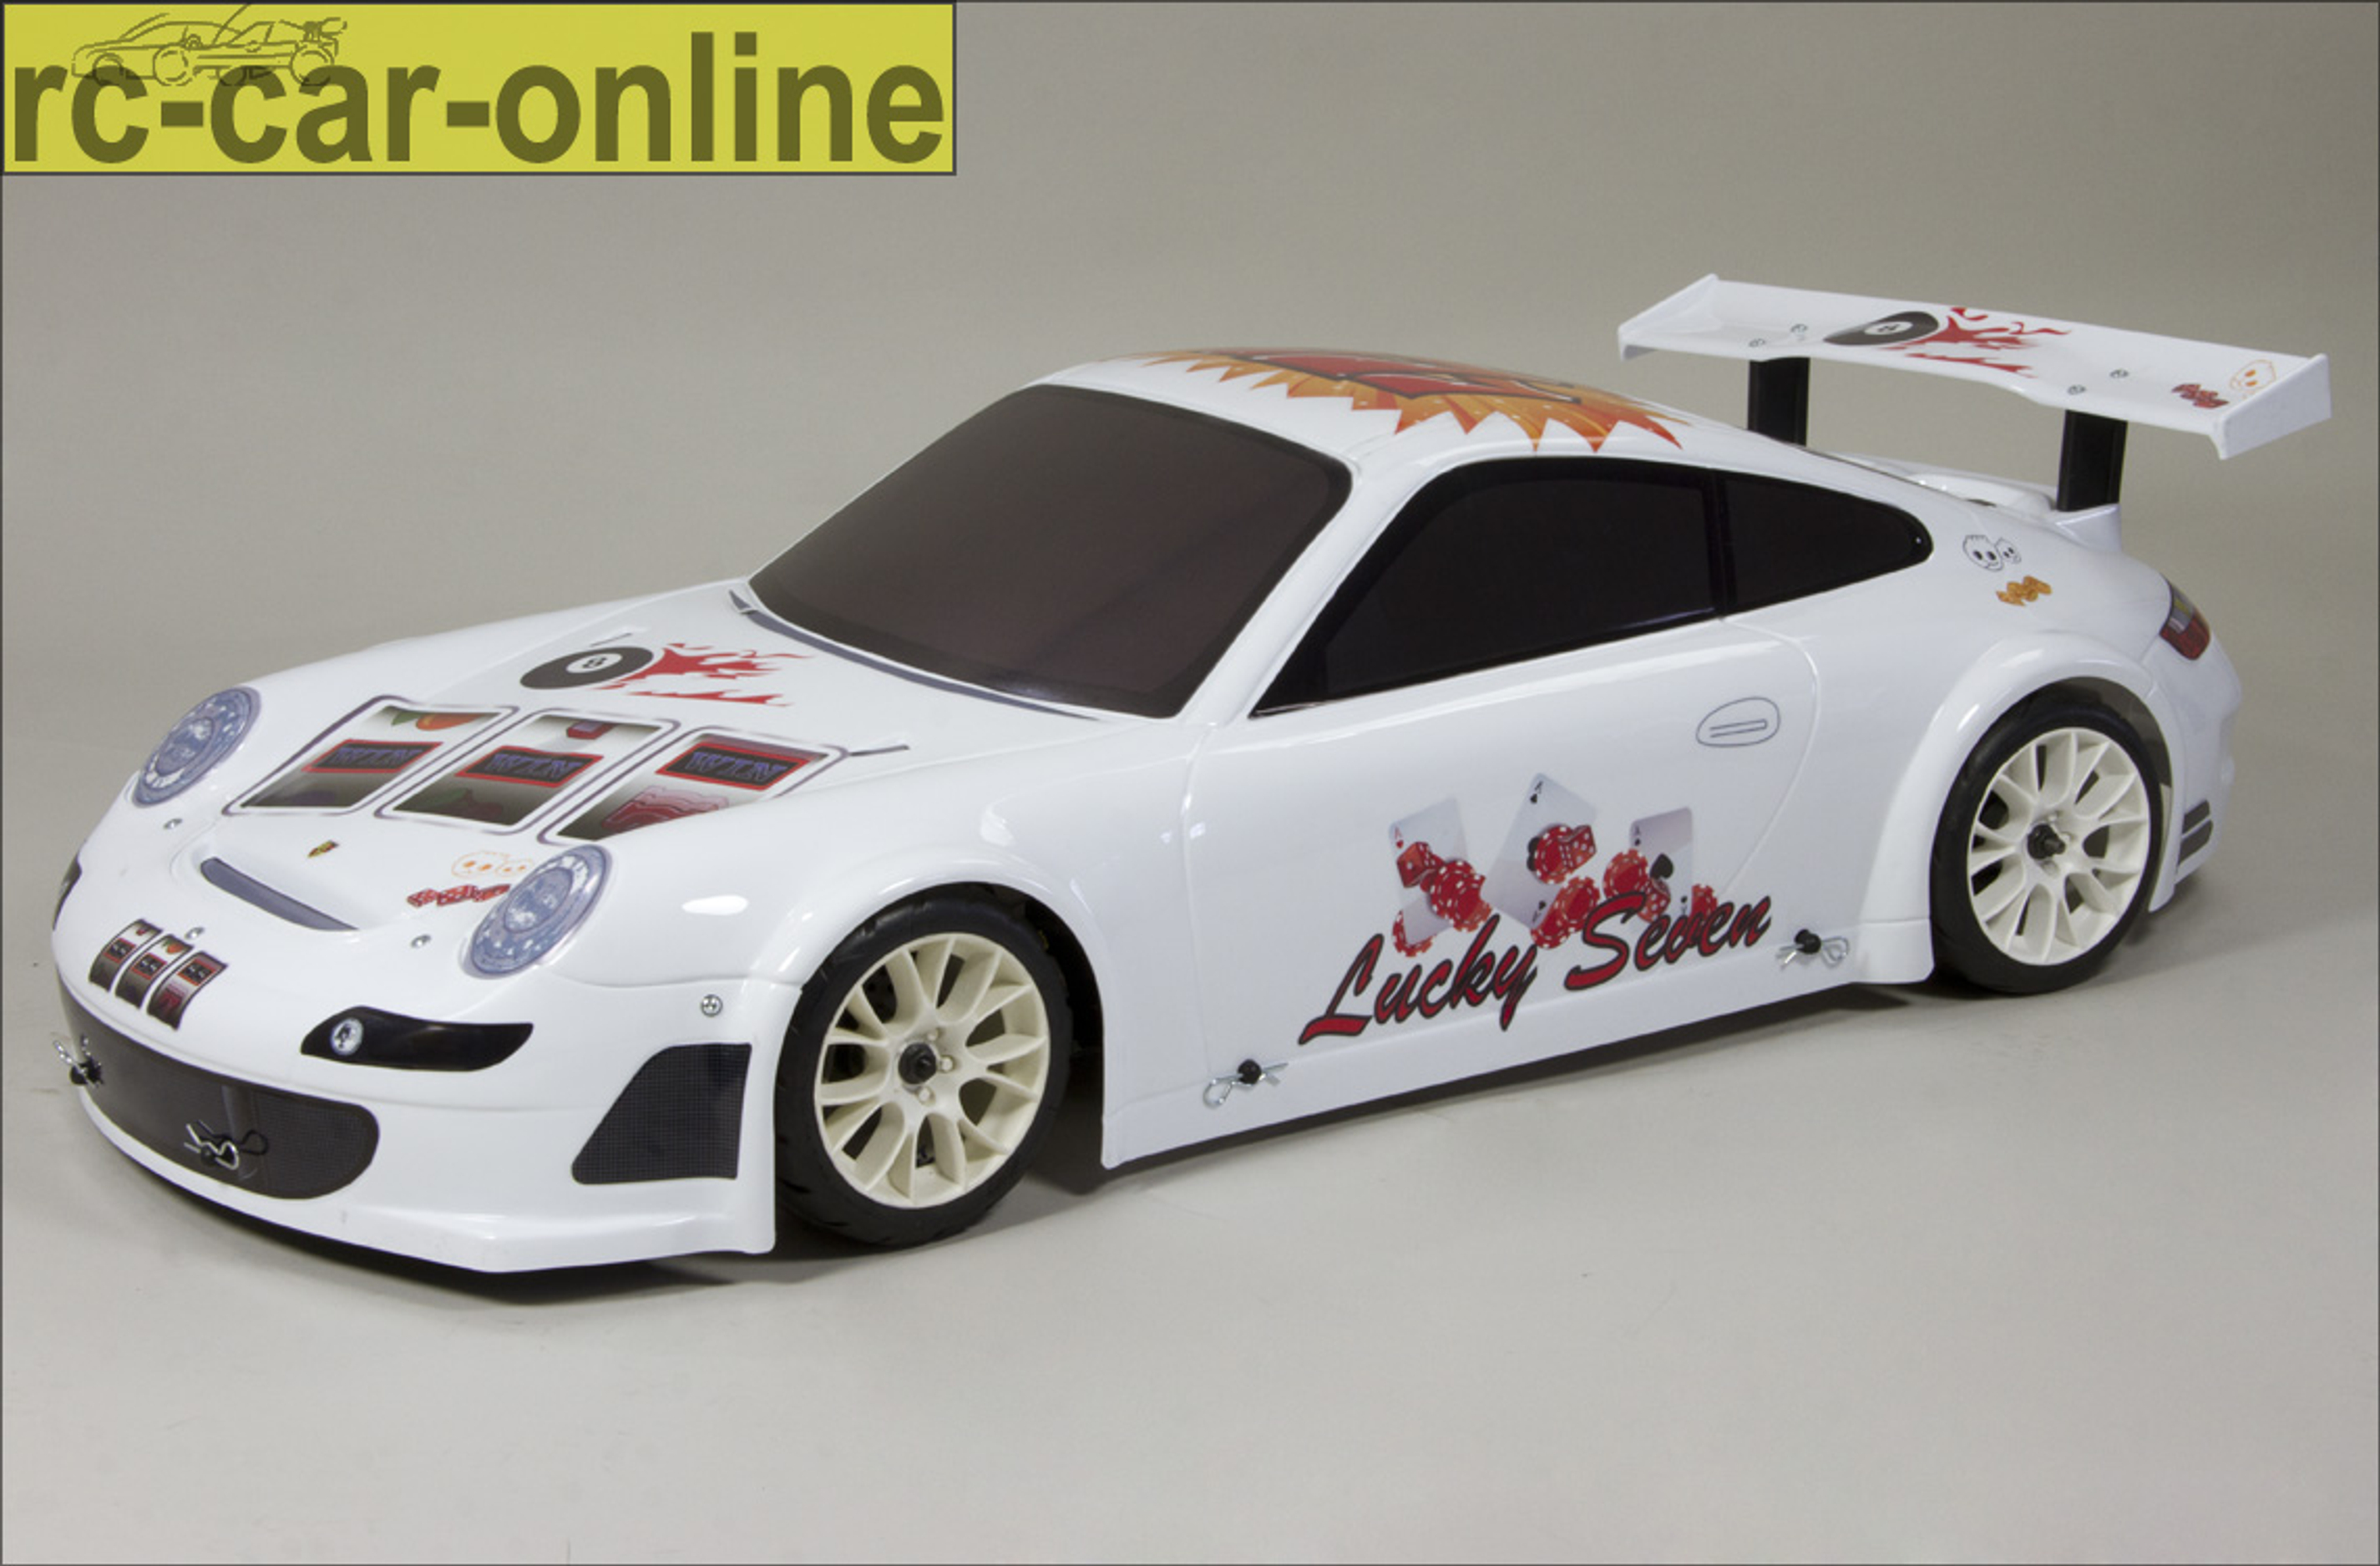 y0784/35 Porsche GT3 RSR, white with Casino / Lucky Seven team decals